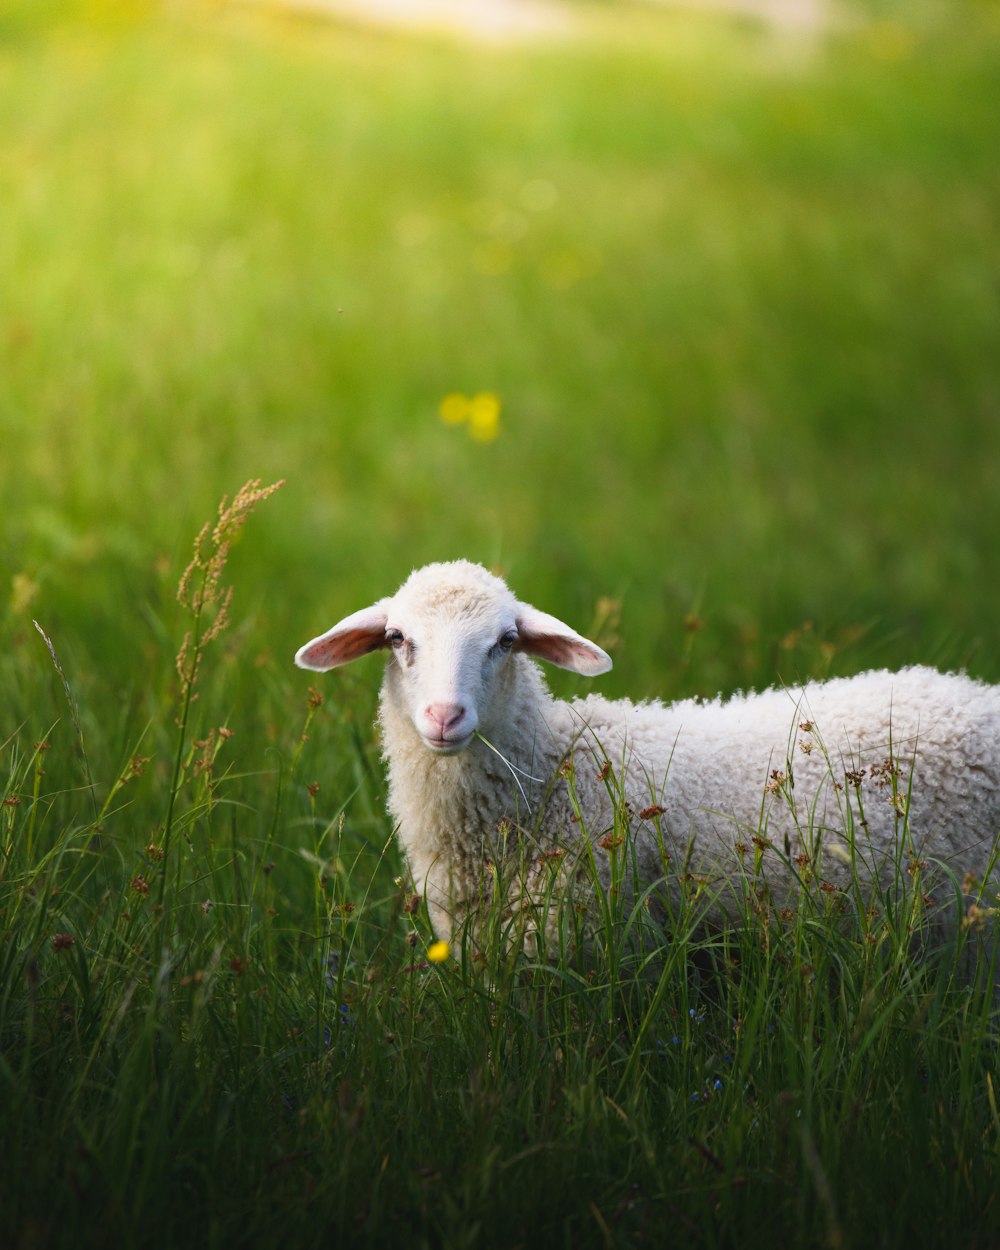 sheep on grass field